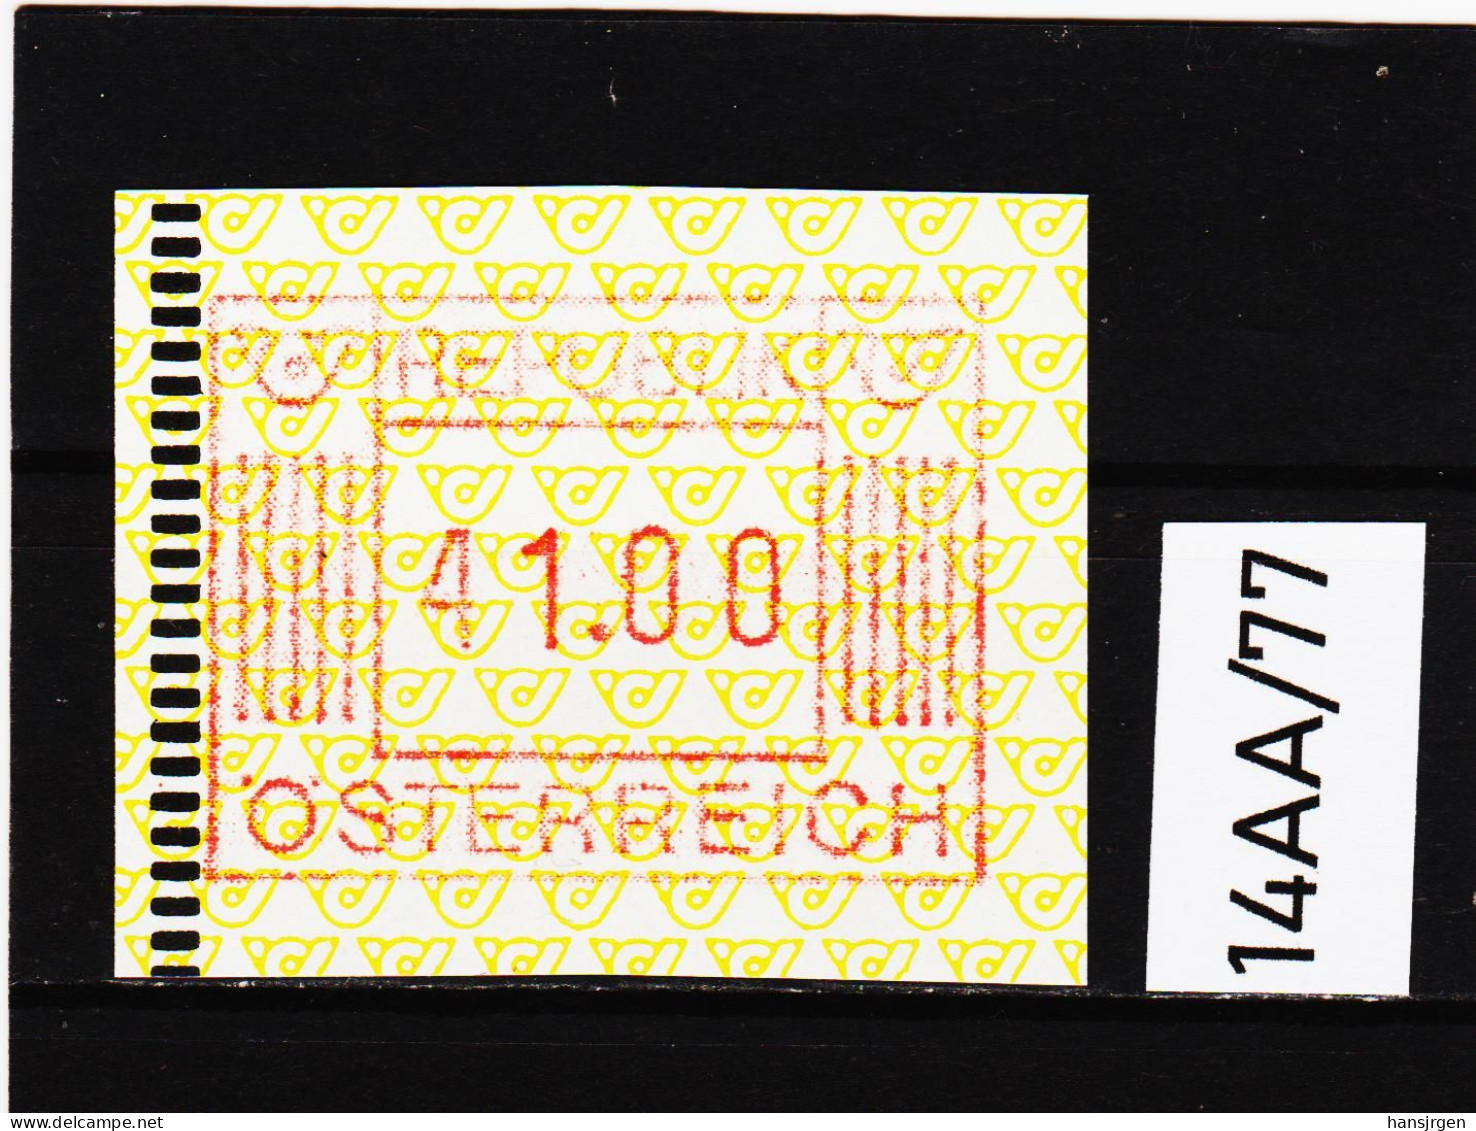 14AA/77  ÖSTERREICH 1983 AUTOMATENMARKEN 1. AUSGABE  41,00 SCHILLING   ** Postfrisch - Automatenmarken [ATM]